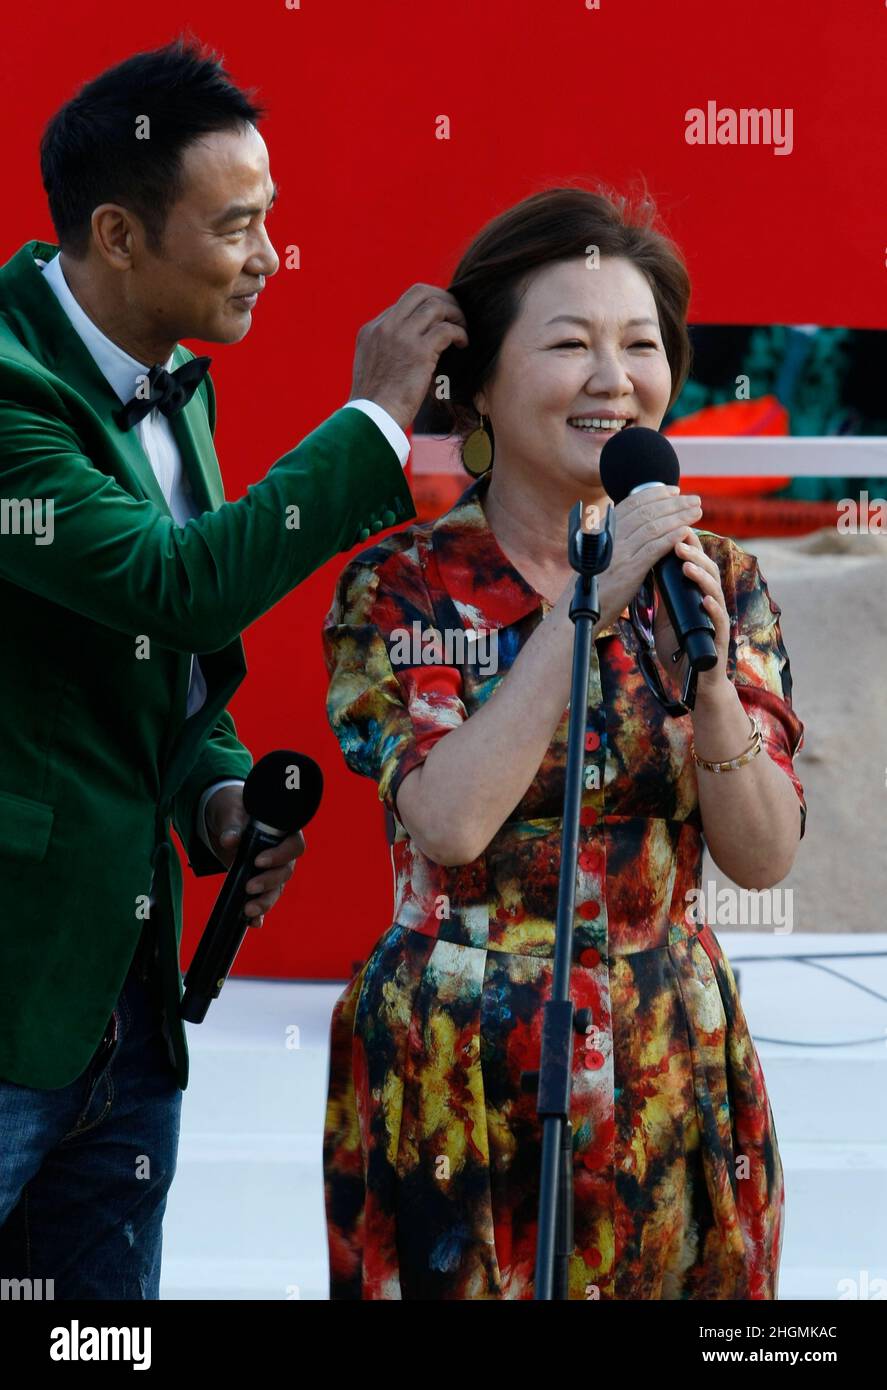 7 de octubre de 2012 - Busan, Corea del Sur : El actor Simon Yam(L) y la actriz Kim Hye Sook asisten a su película 'The Tieves' Open Stage durante el Festival Internacional de Cine de Busan 17th Open Talk en la aldea de Biff en la costa marítima de Haeundae. (Ryu Seung-il / Polaris) Foto de stock